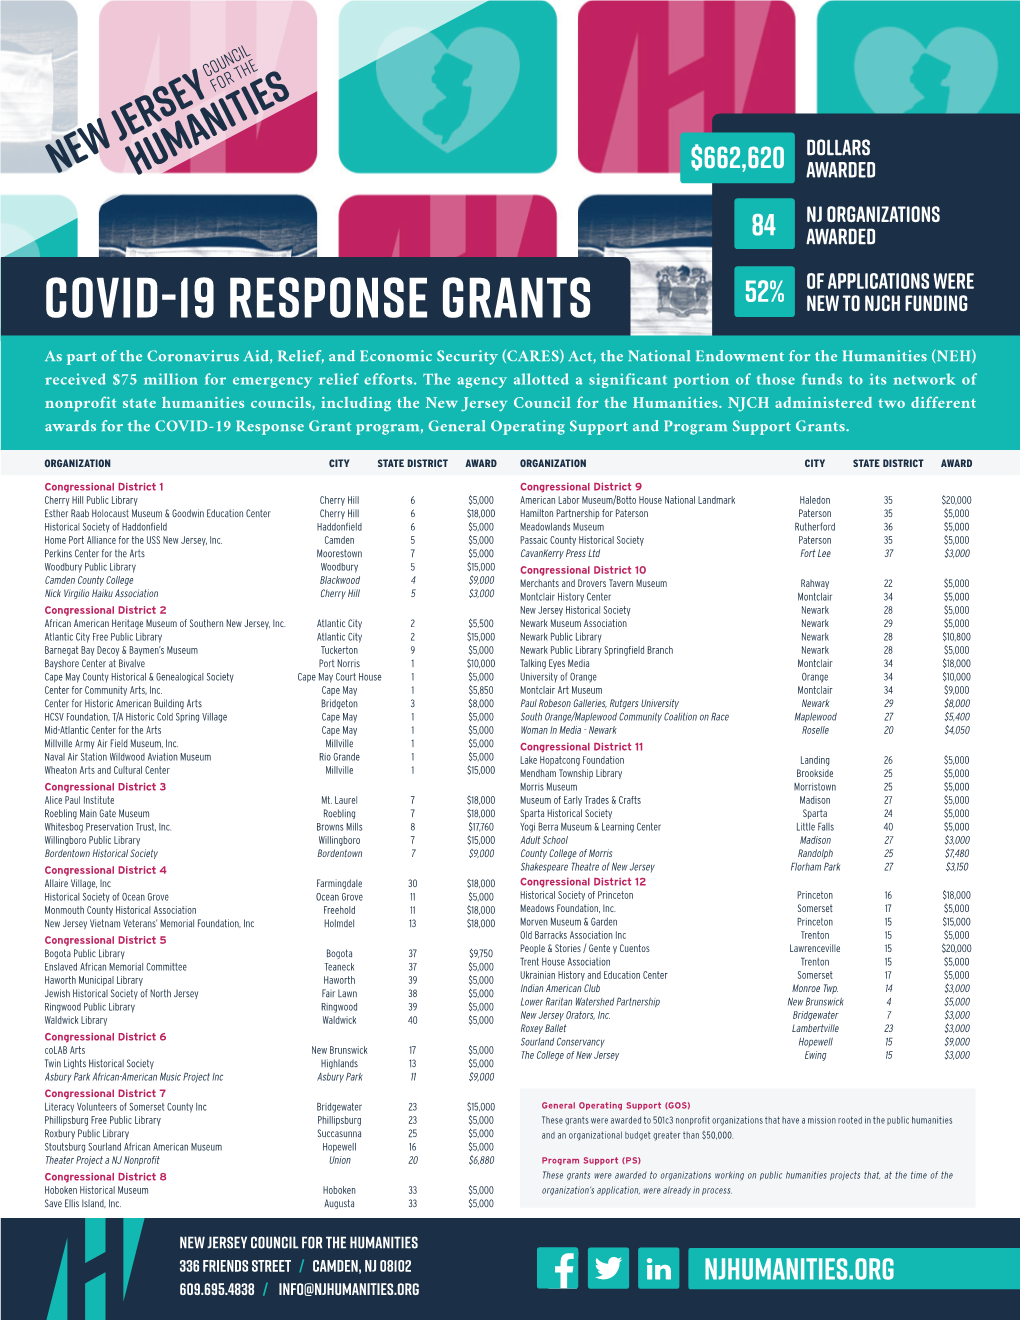 Covid-19 Response Grant Report